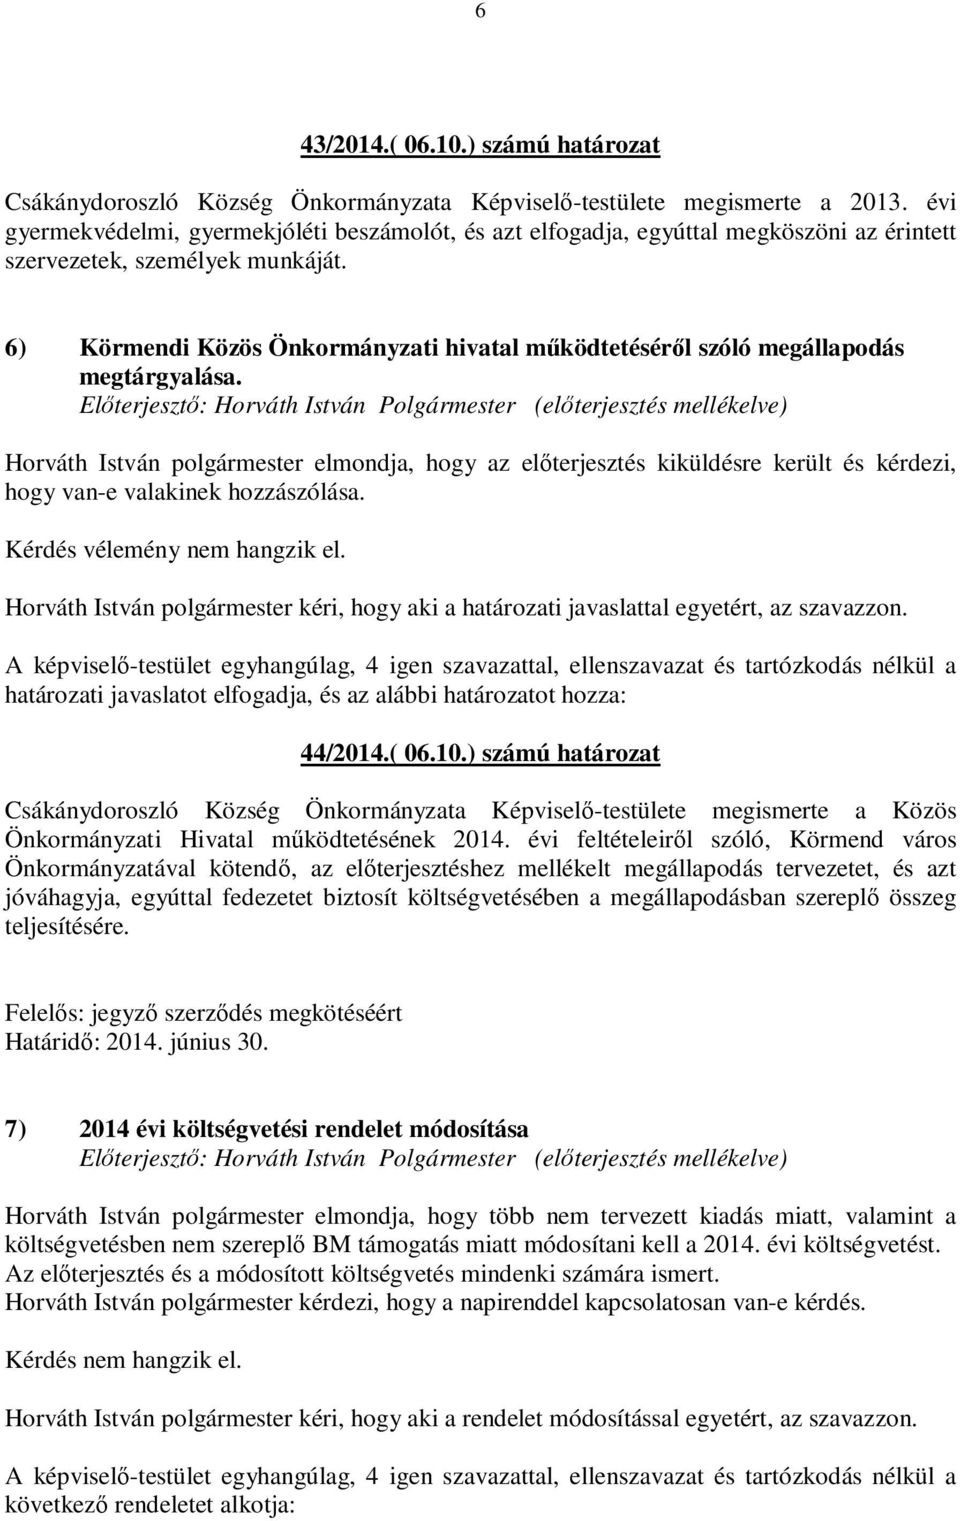 6) Körmendi Közös Önkormányzati hivatal működtetéséről szóló megállapodás megtárgyalása.